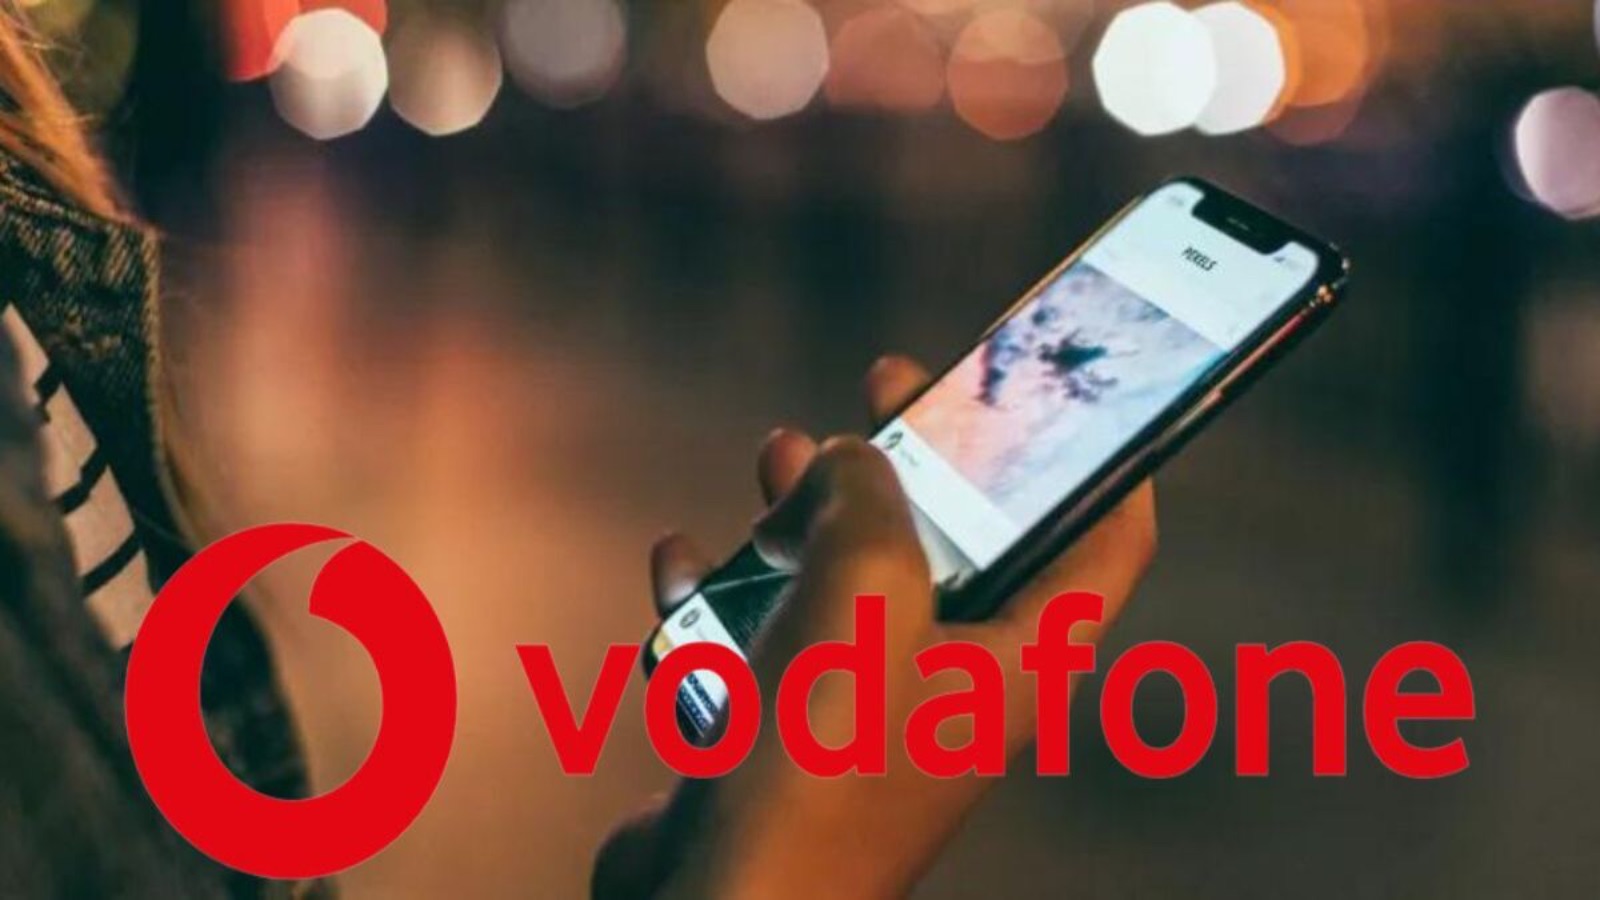 Vodafone ha due offerte per battere Iliad, ecco fino a 200 giga al mese